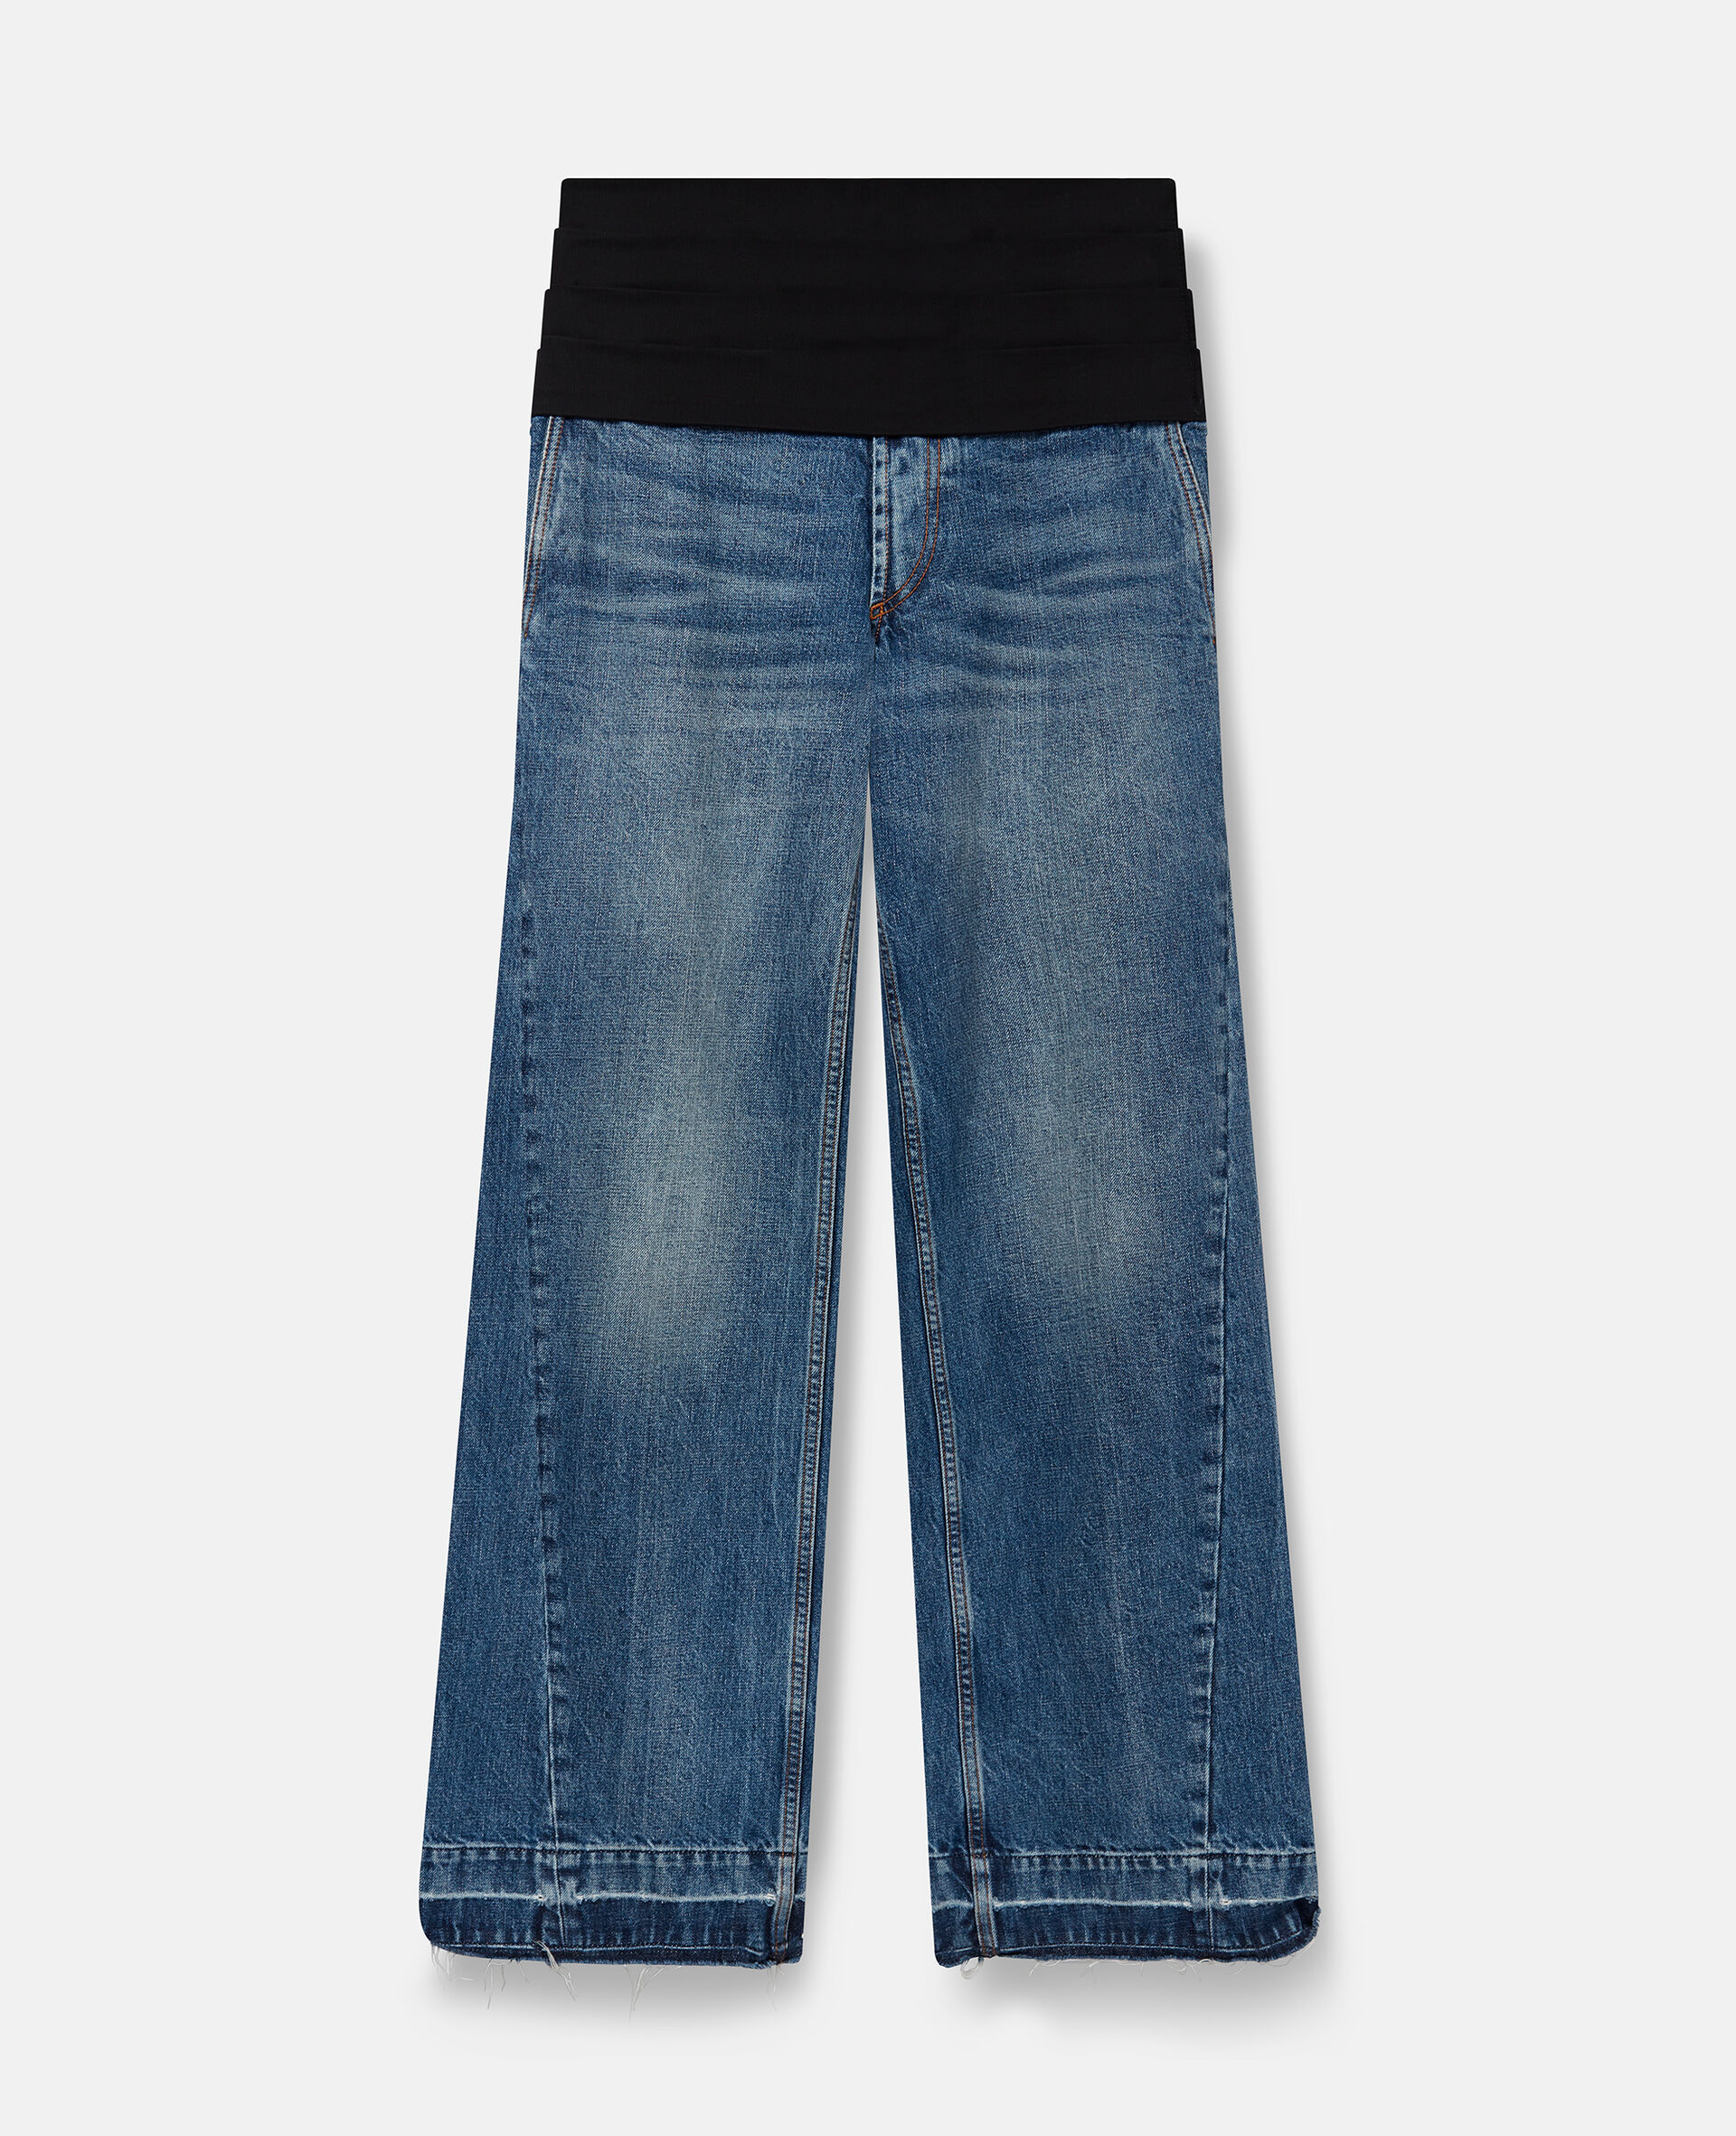 Jeans in stile smoking-Blu-medium